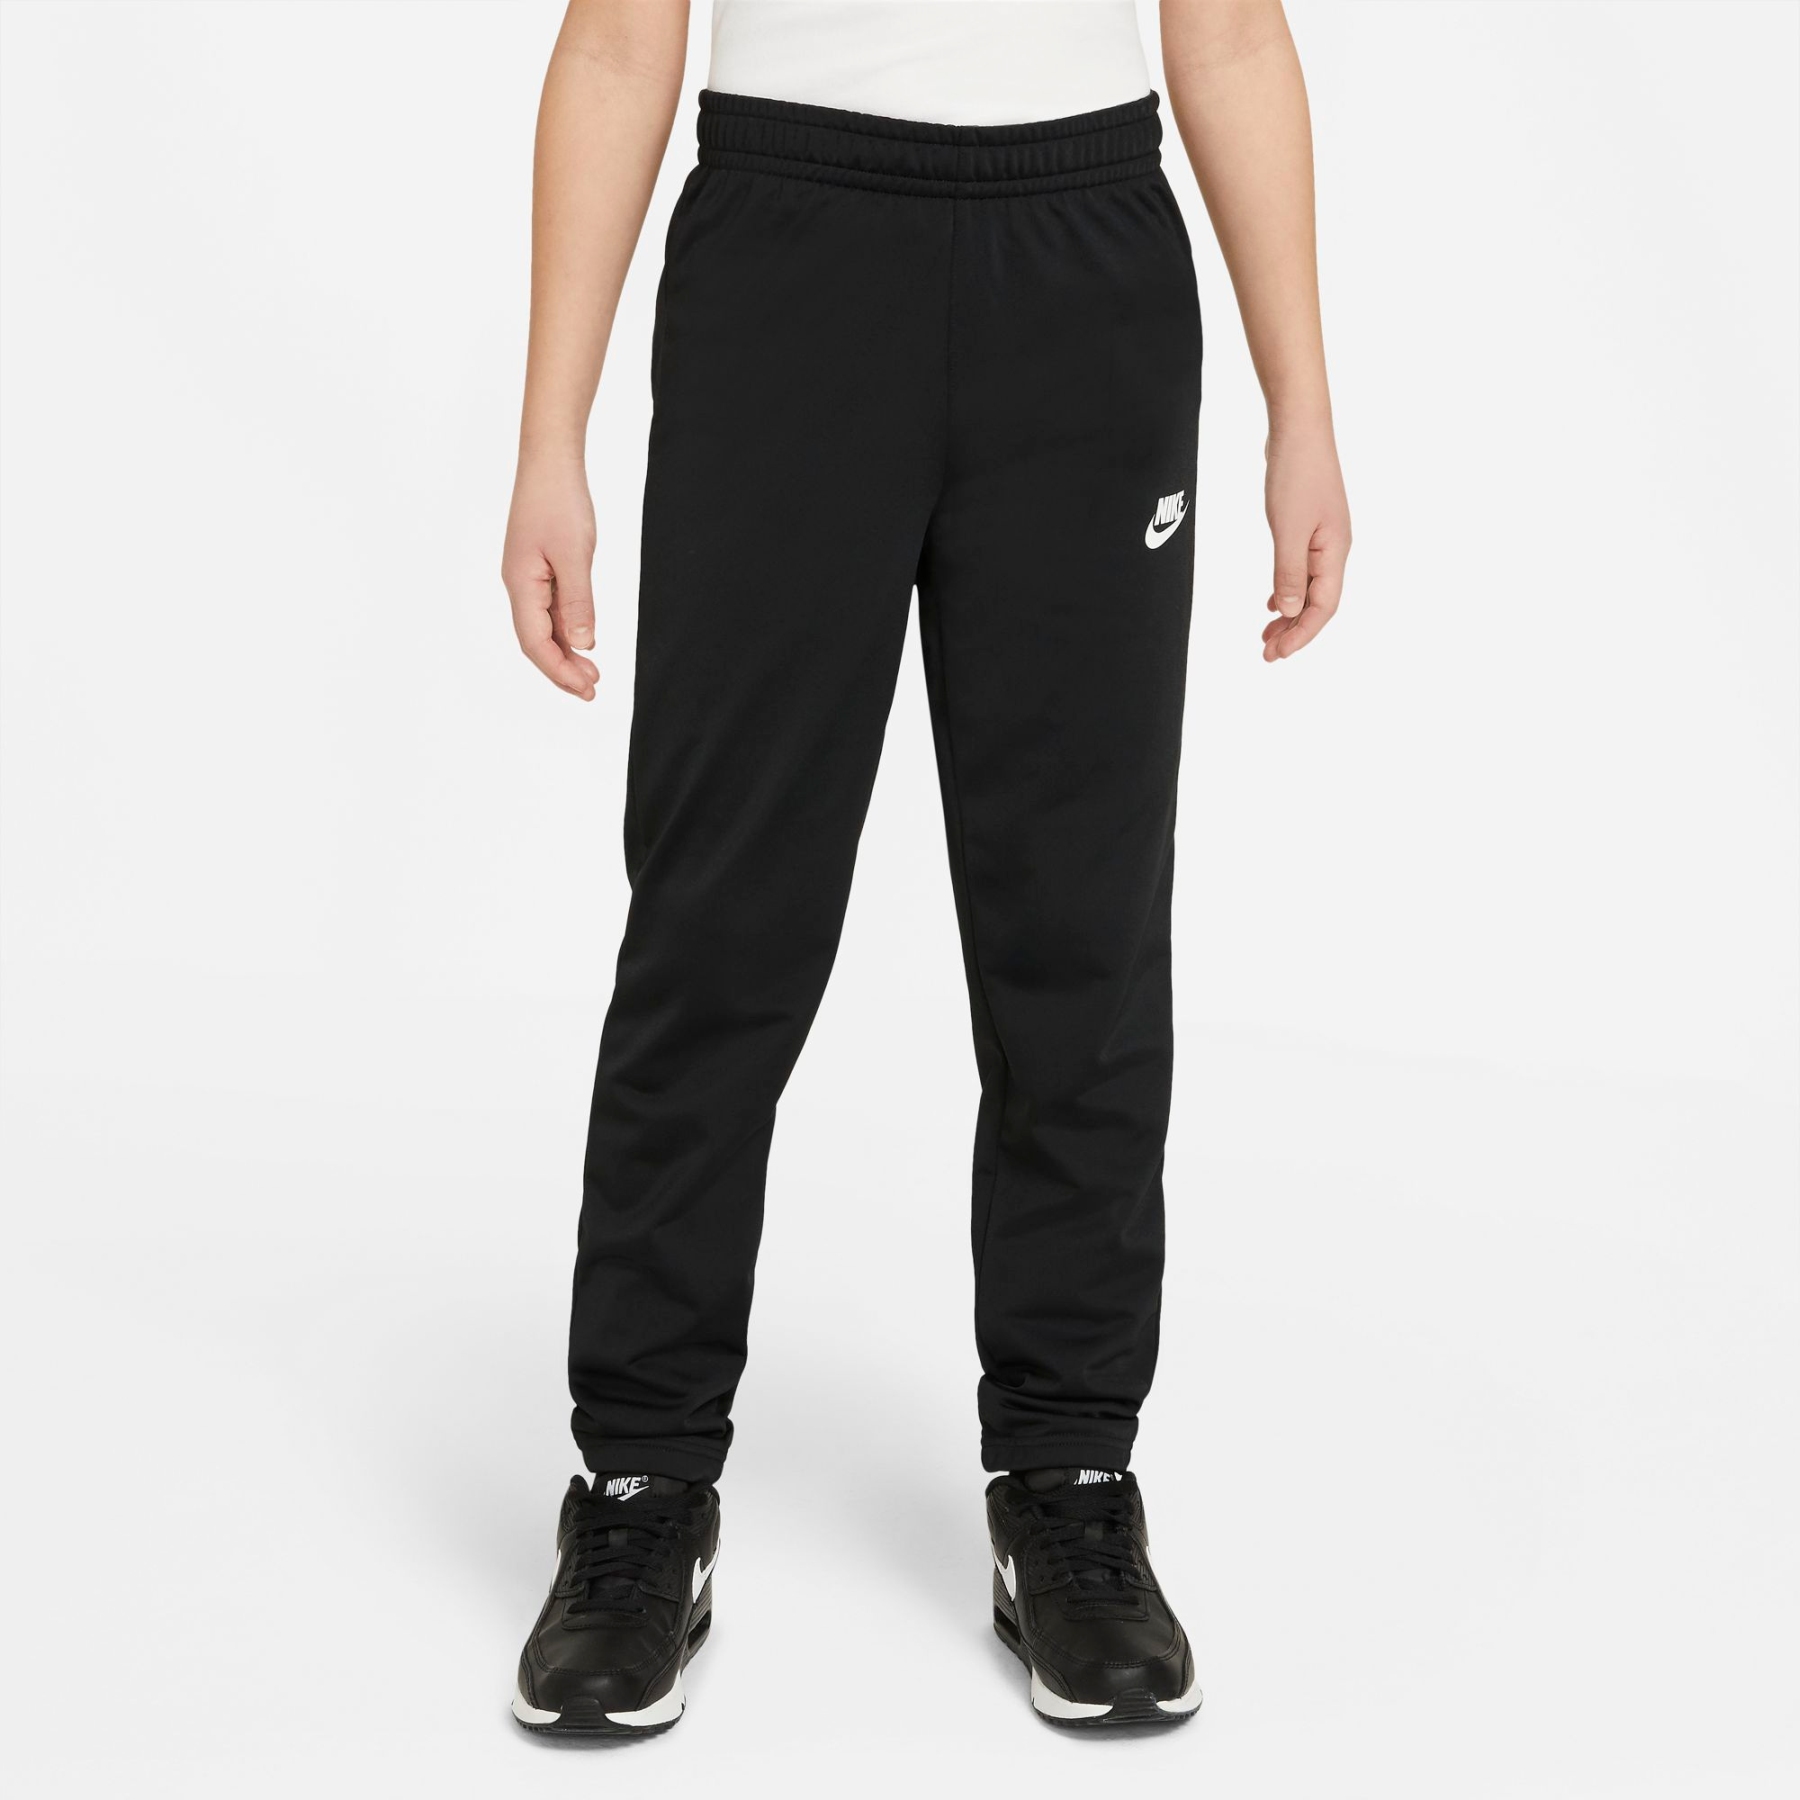 Nike Sportswear Trainingsanzug für DH9661-010 ältere Kinder schwarz/ - schwarz/schwarz/weiss